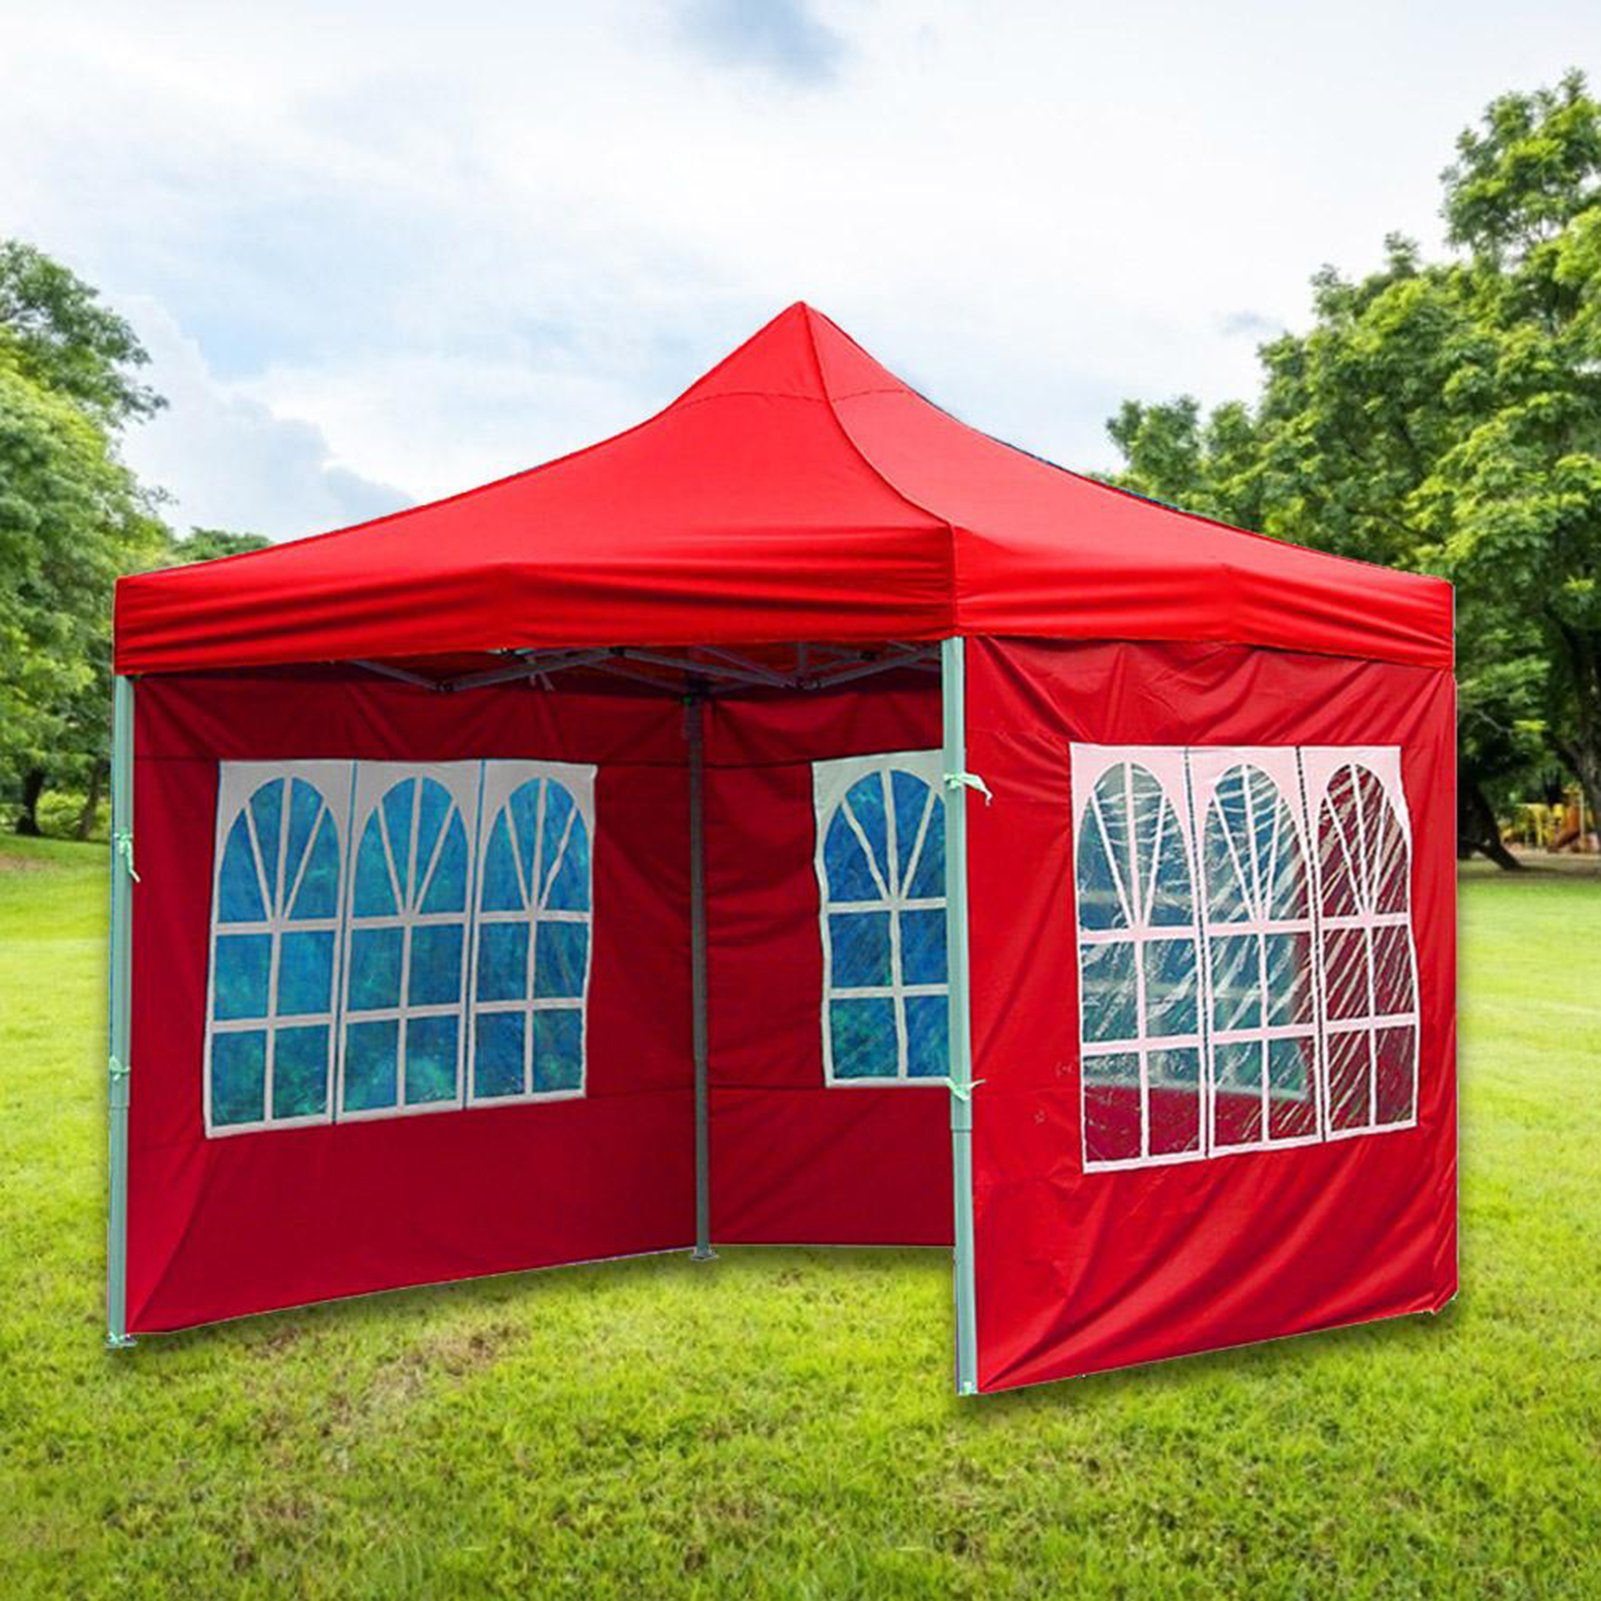 Rutaqian Tarp-Zelt Zelttuch Faltbar Wasserdicht Hat 3 Seiten und transparente Fenster, (Multifunktionaler Camping-Sonnenschutz aus Oxford-Stoff, Wind- und regensicheres Wickeltuch für Außenstallzelte), für Festival, Party, Marktstand, Flohmarkt und Campen rot | Tarps